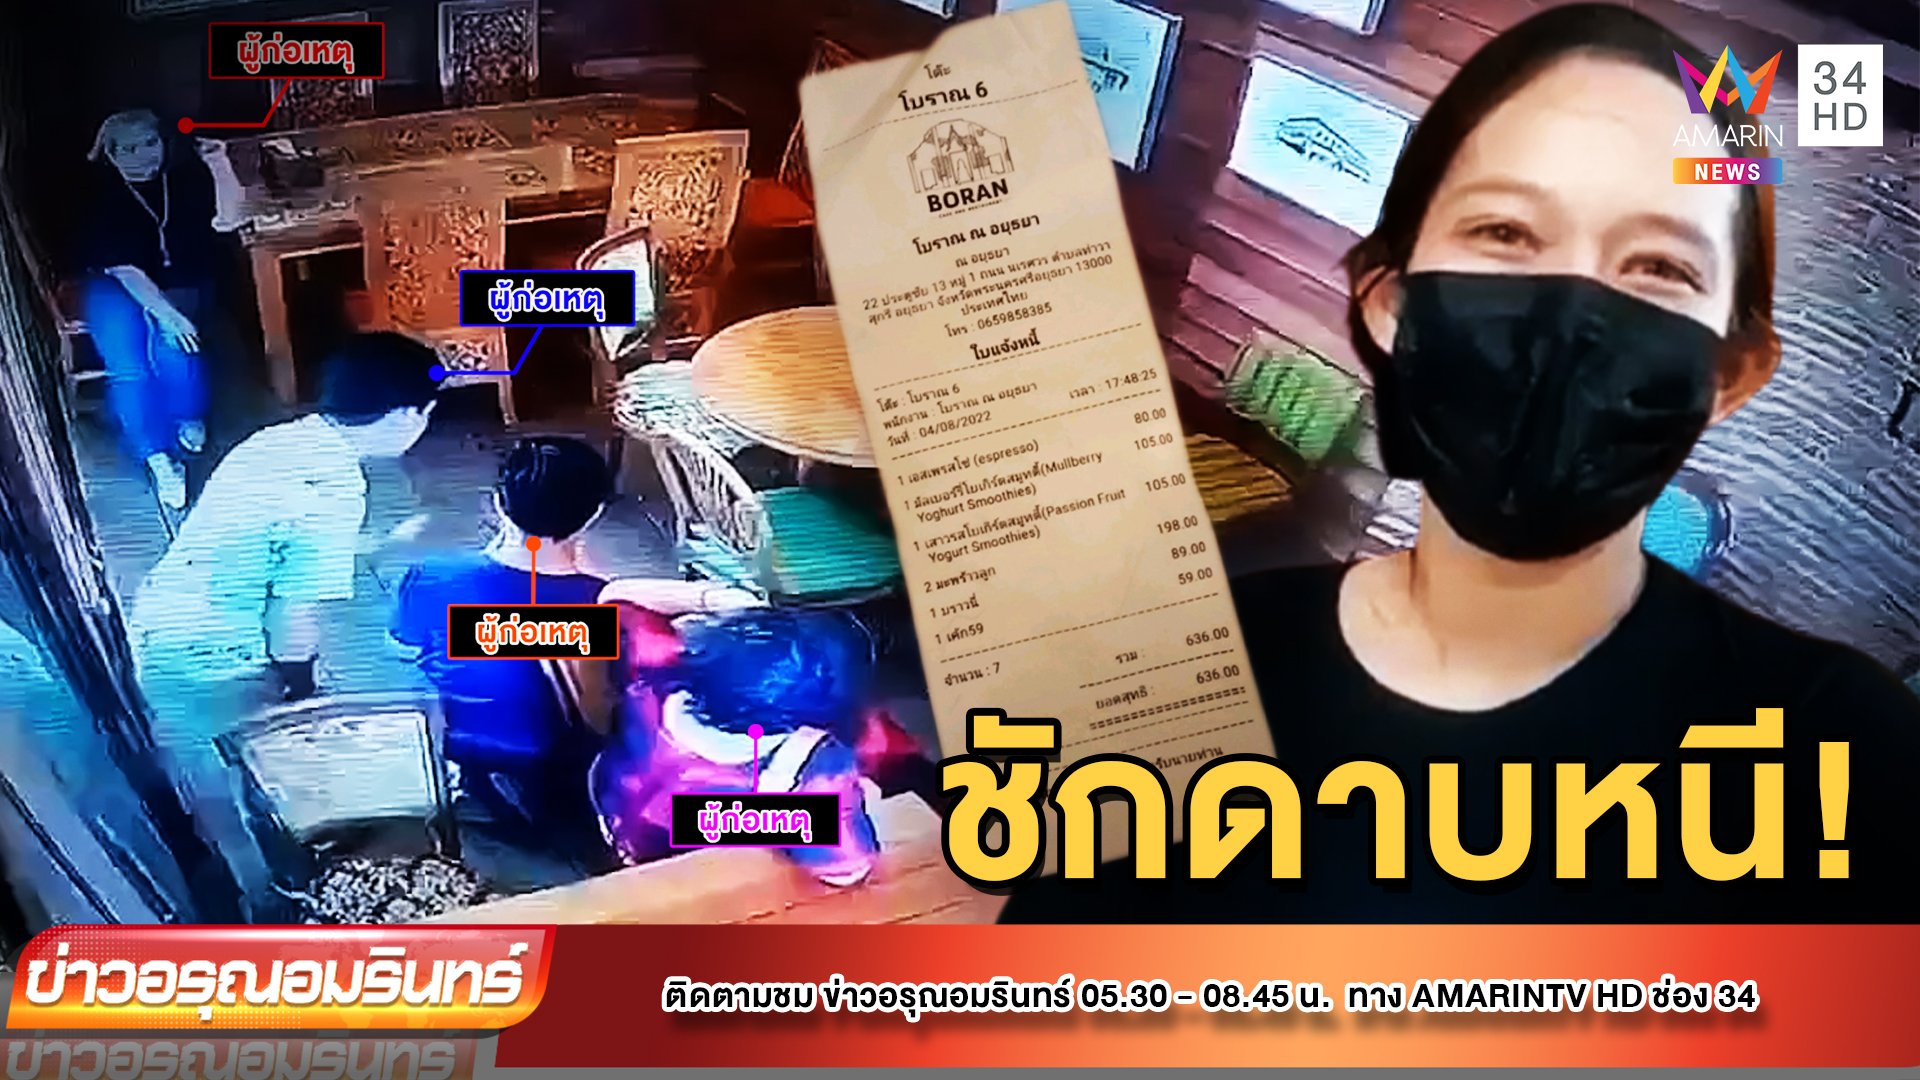 เร่งล่า 4 นักท่องเที่ยวไทยตีเนียน กินแล้วชิ่งไม่จ่าย  | ข่าวอรุณอมรินทร์ | 5 ส.ค. 65 | AMARIN TVHD34